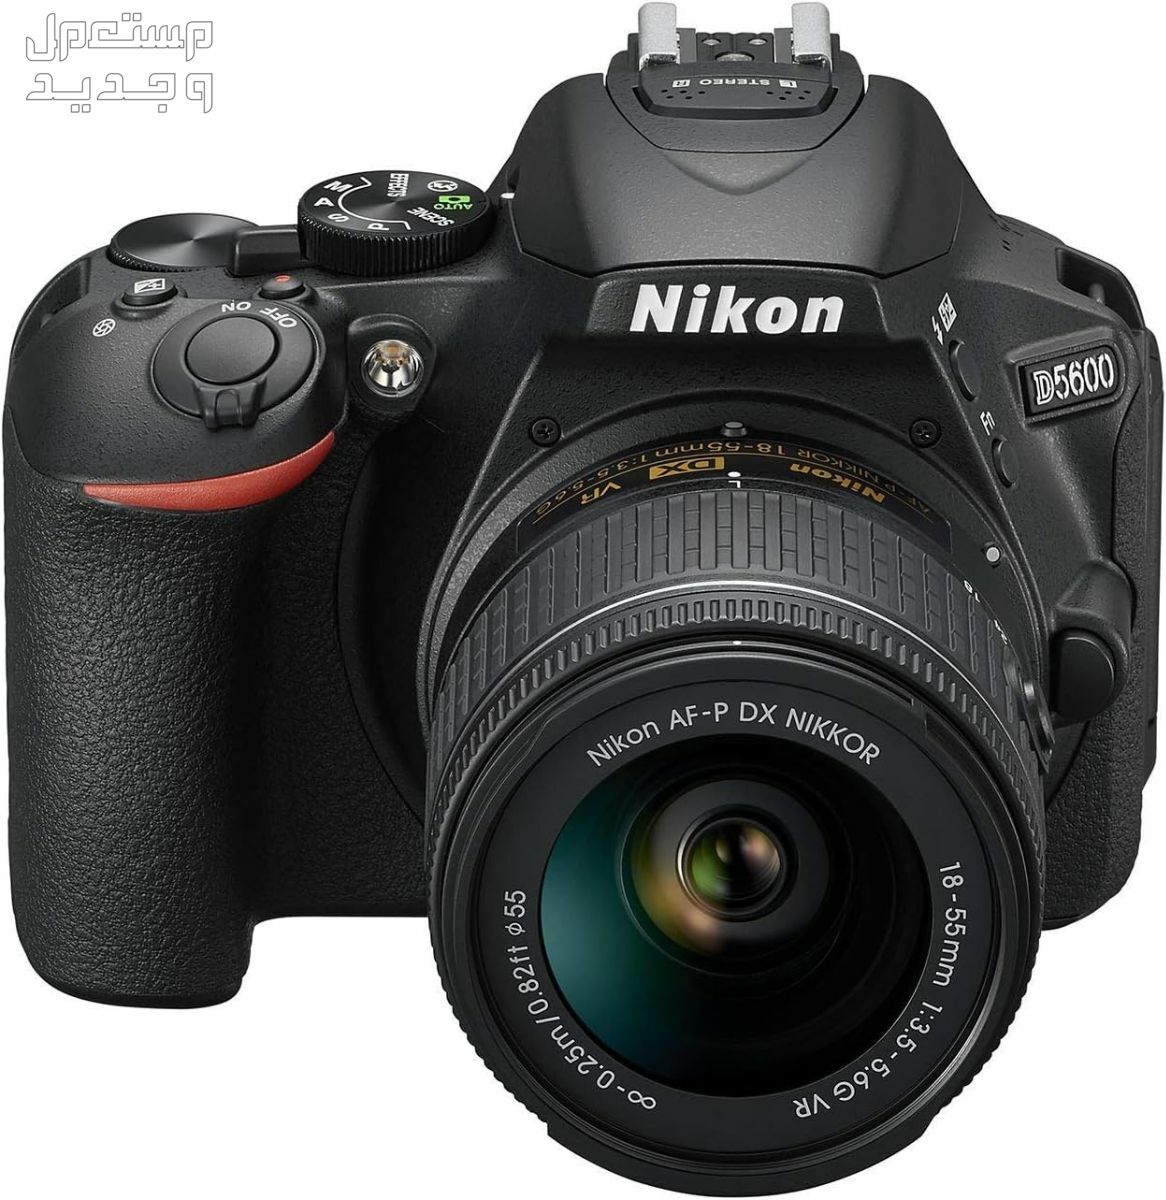 10 كاميرات تصوير ماركات عالمية بأسعار رخيصة في السودان سعر كاميرا Nikon D5600